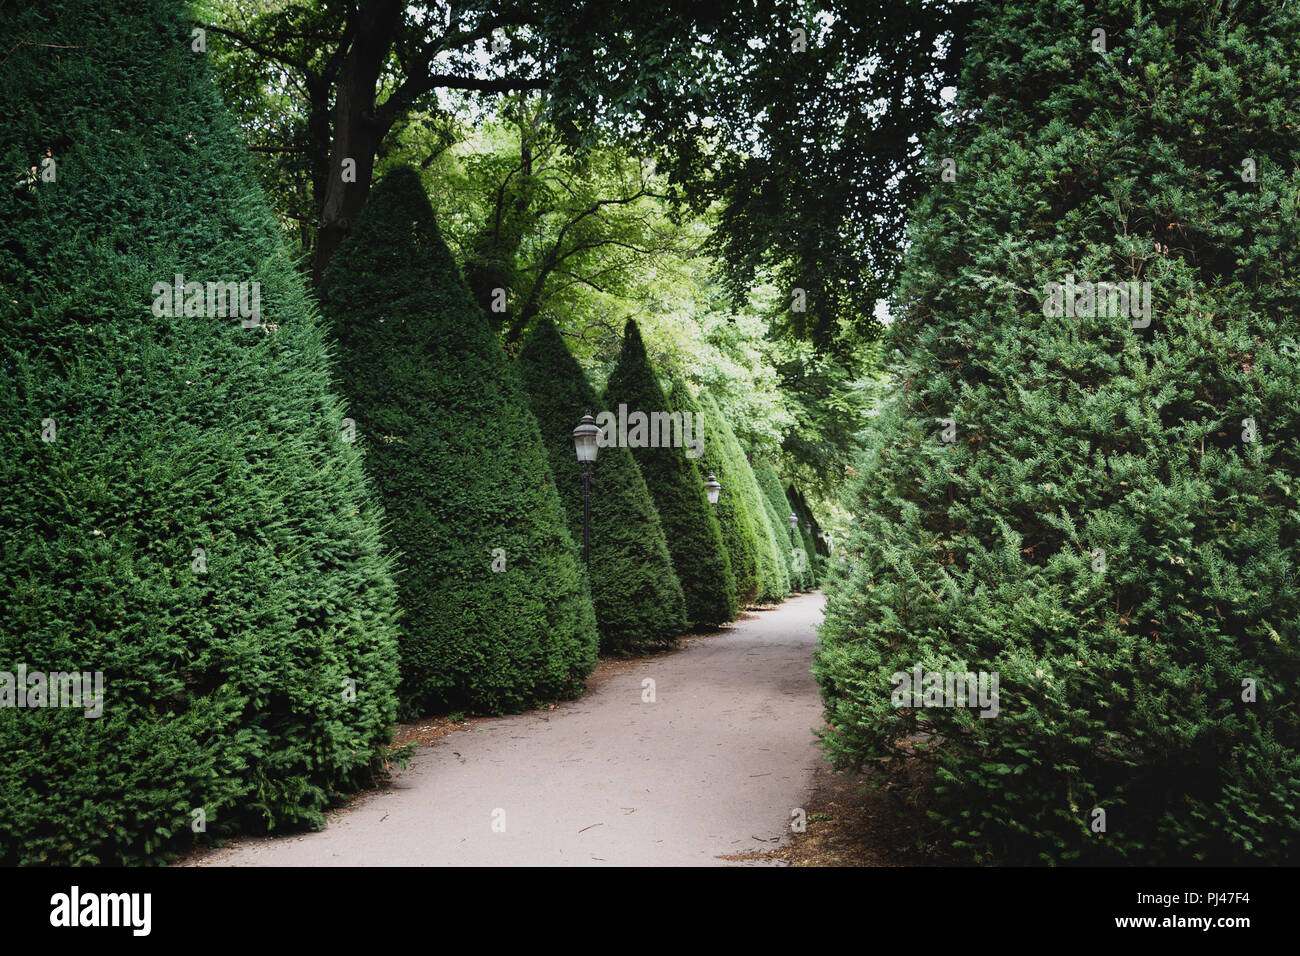 Cypress garden Stock Photo